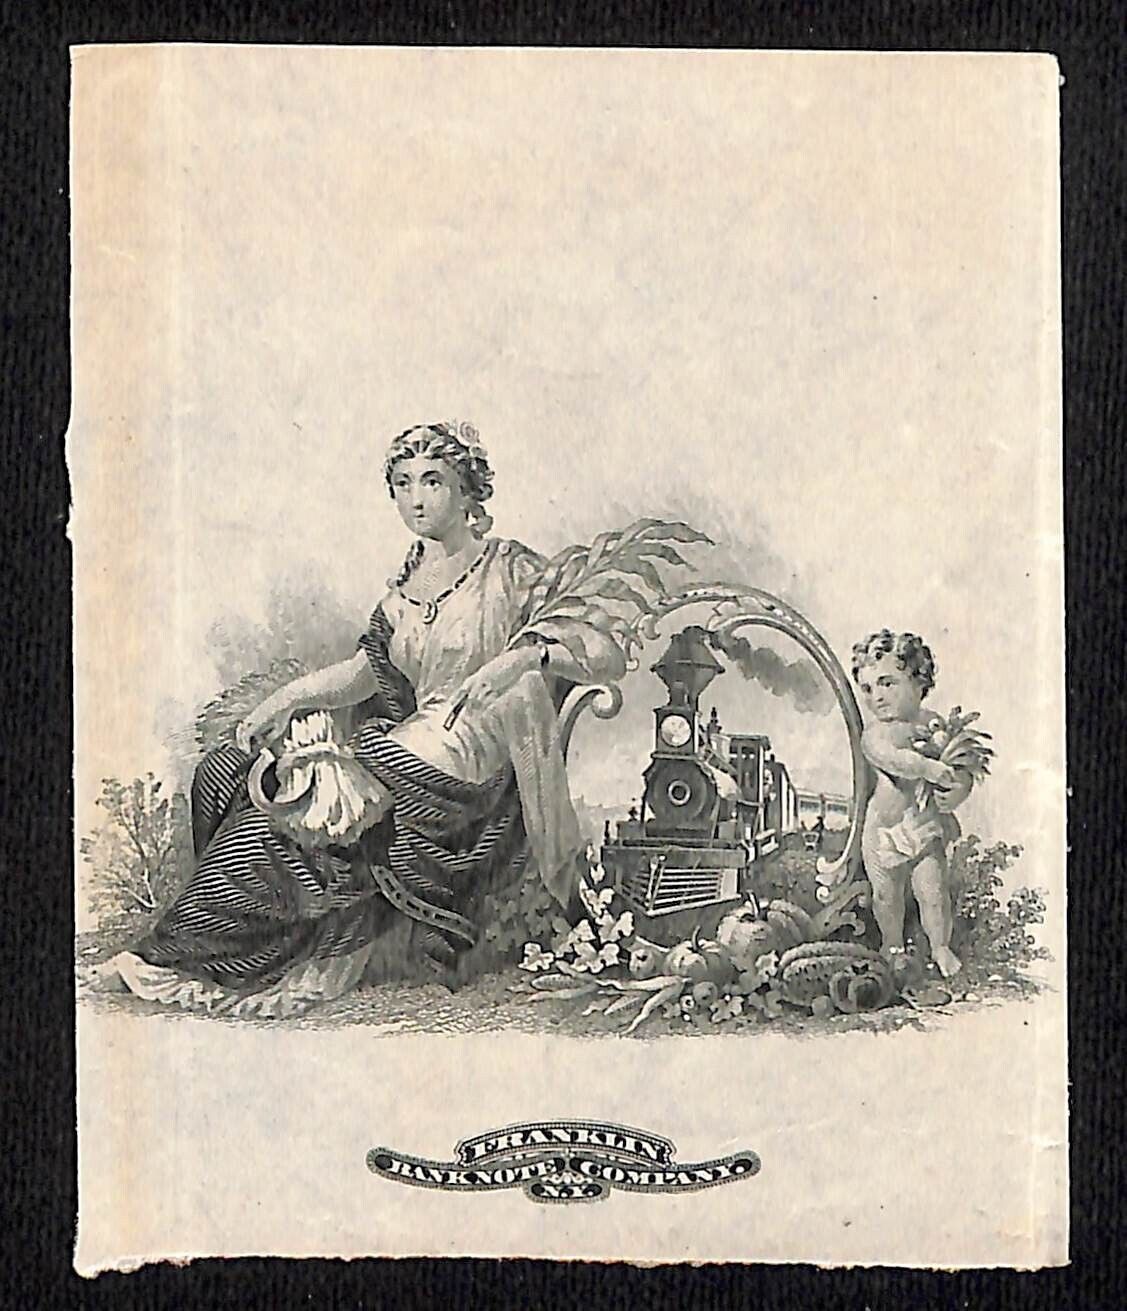 c1880's-90's Franklin Bank Note Co. Locomotive Illustration / Engraving